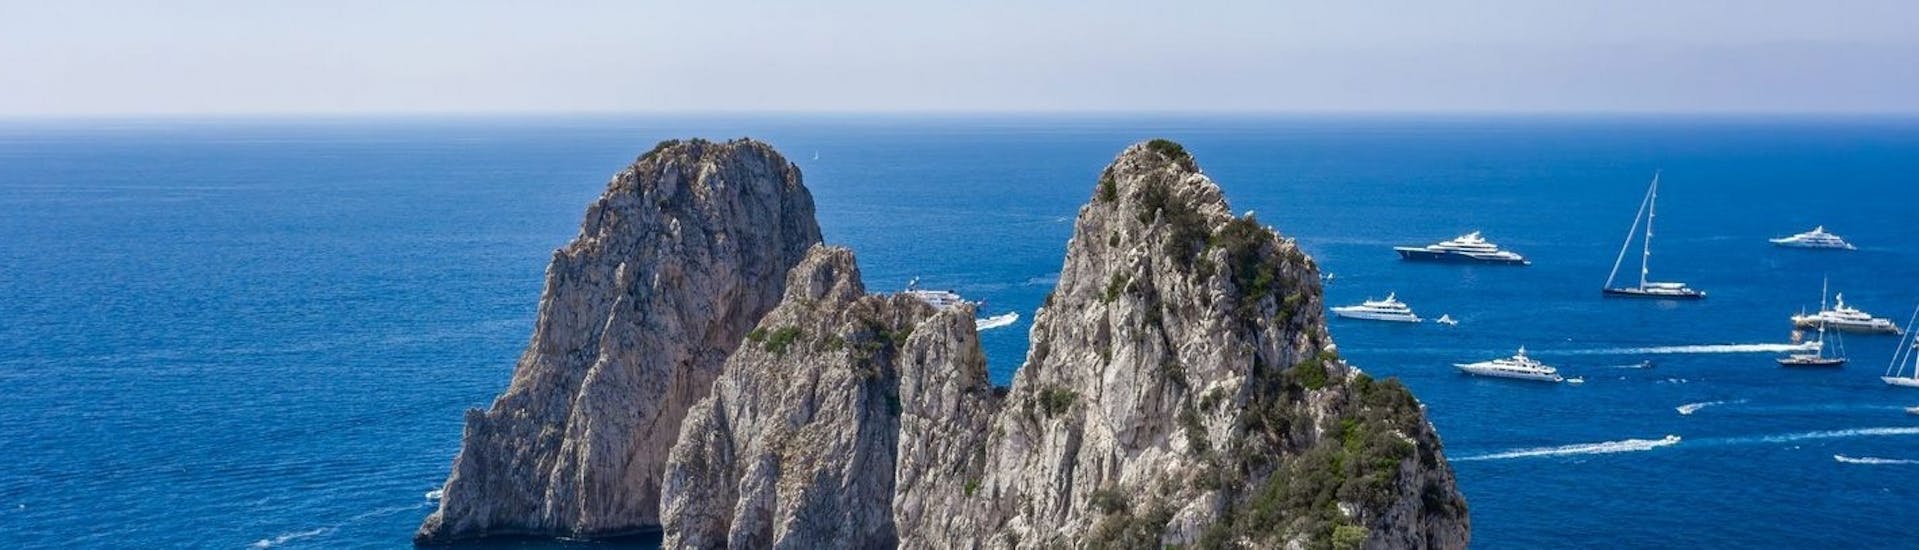 Vue de Faraglioni de Capri qui peuvent être admirés pendant la Balade en bateau de Capri à la Grotte bleue avec Fiore Sea Excursions Capri.